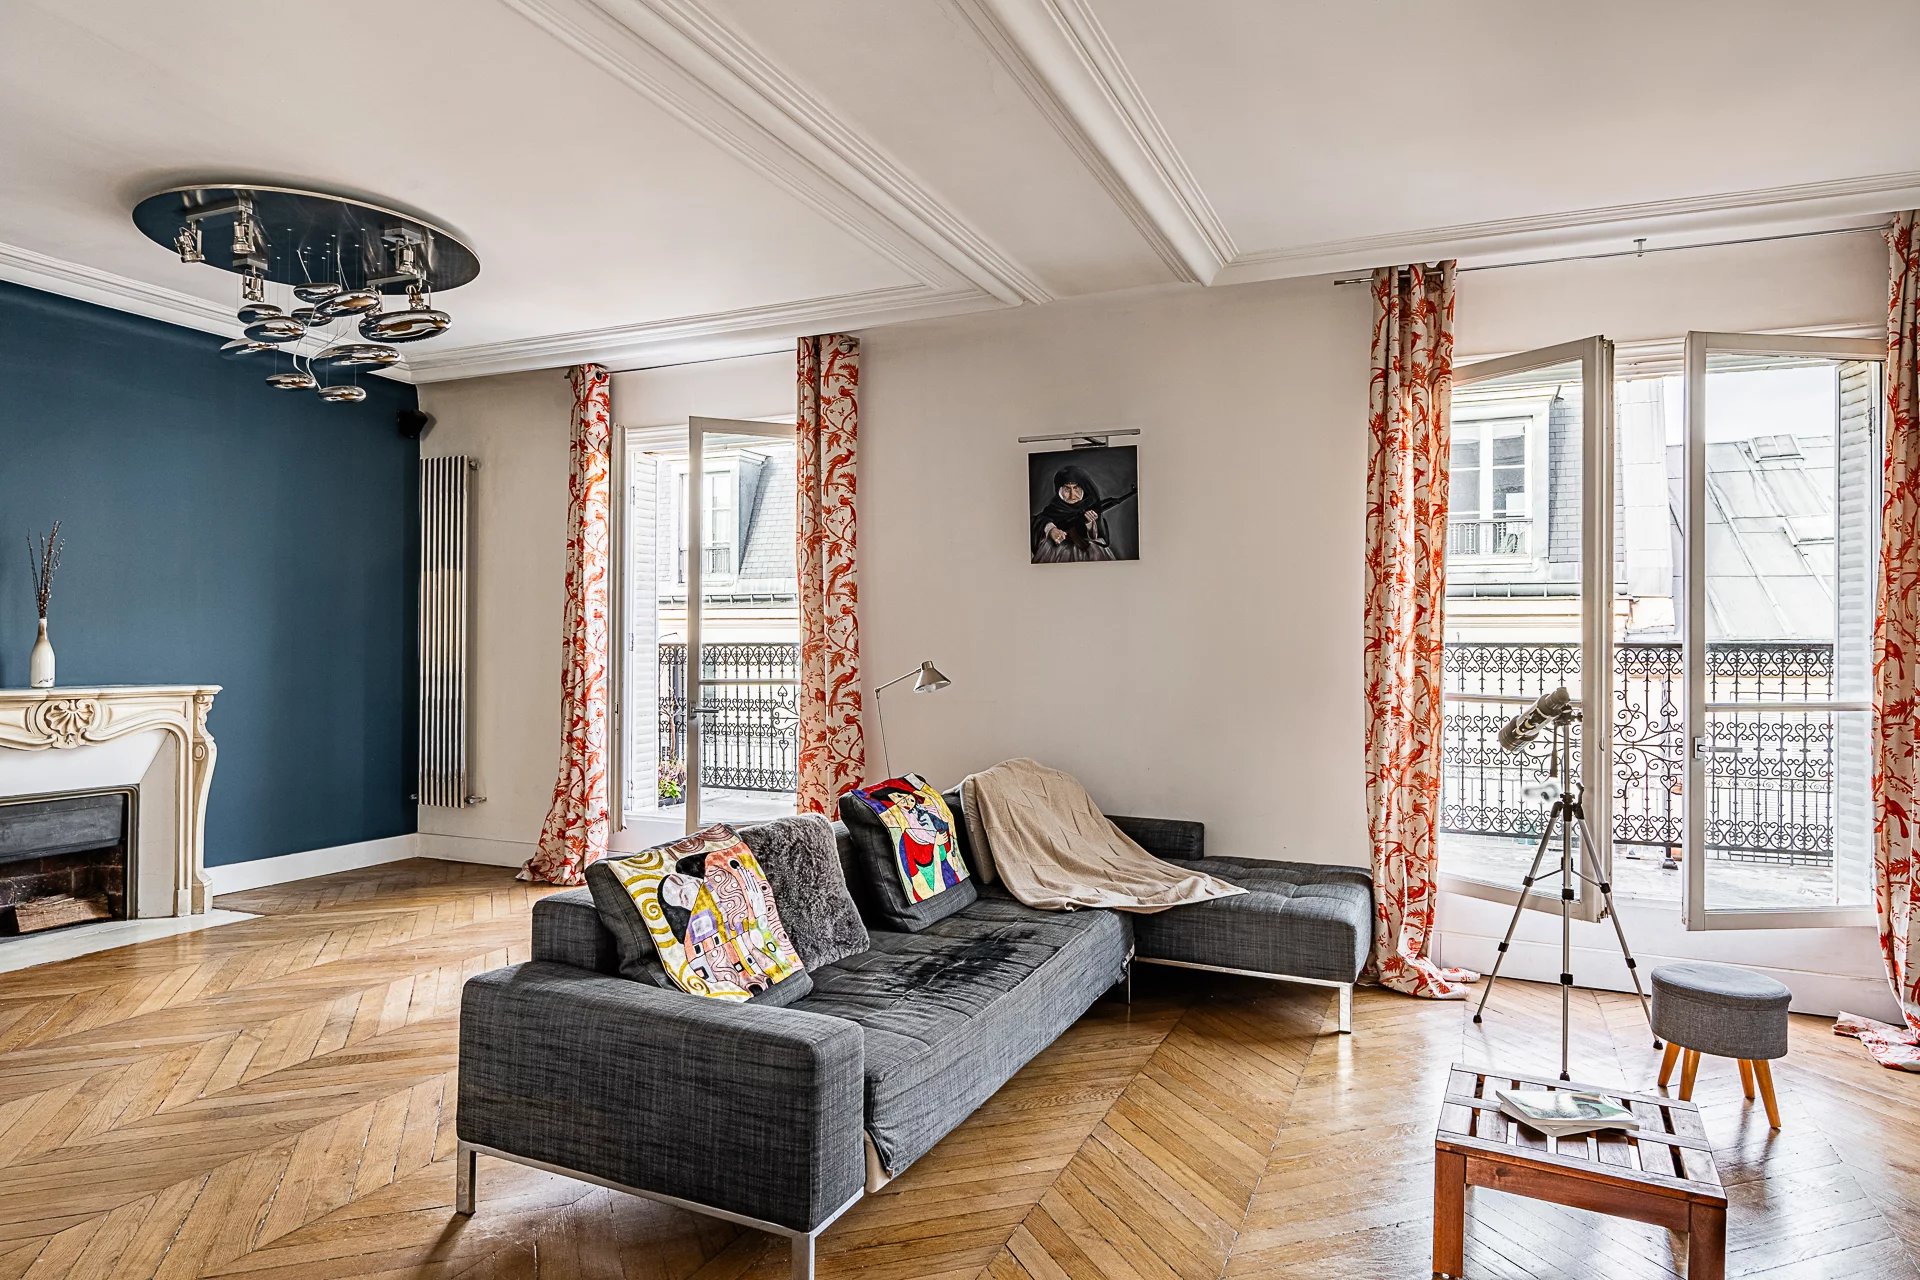 Apartment for sale - Saint-Philippe du Roule - 75008 - 3 bedrooms - 147.68 sq.m (1,590 sq ft)